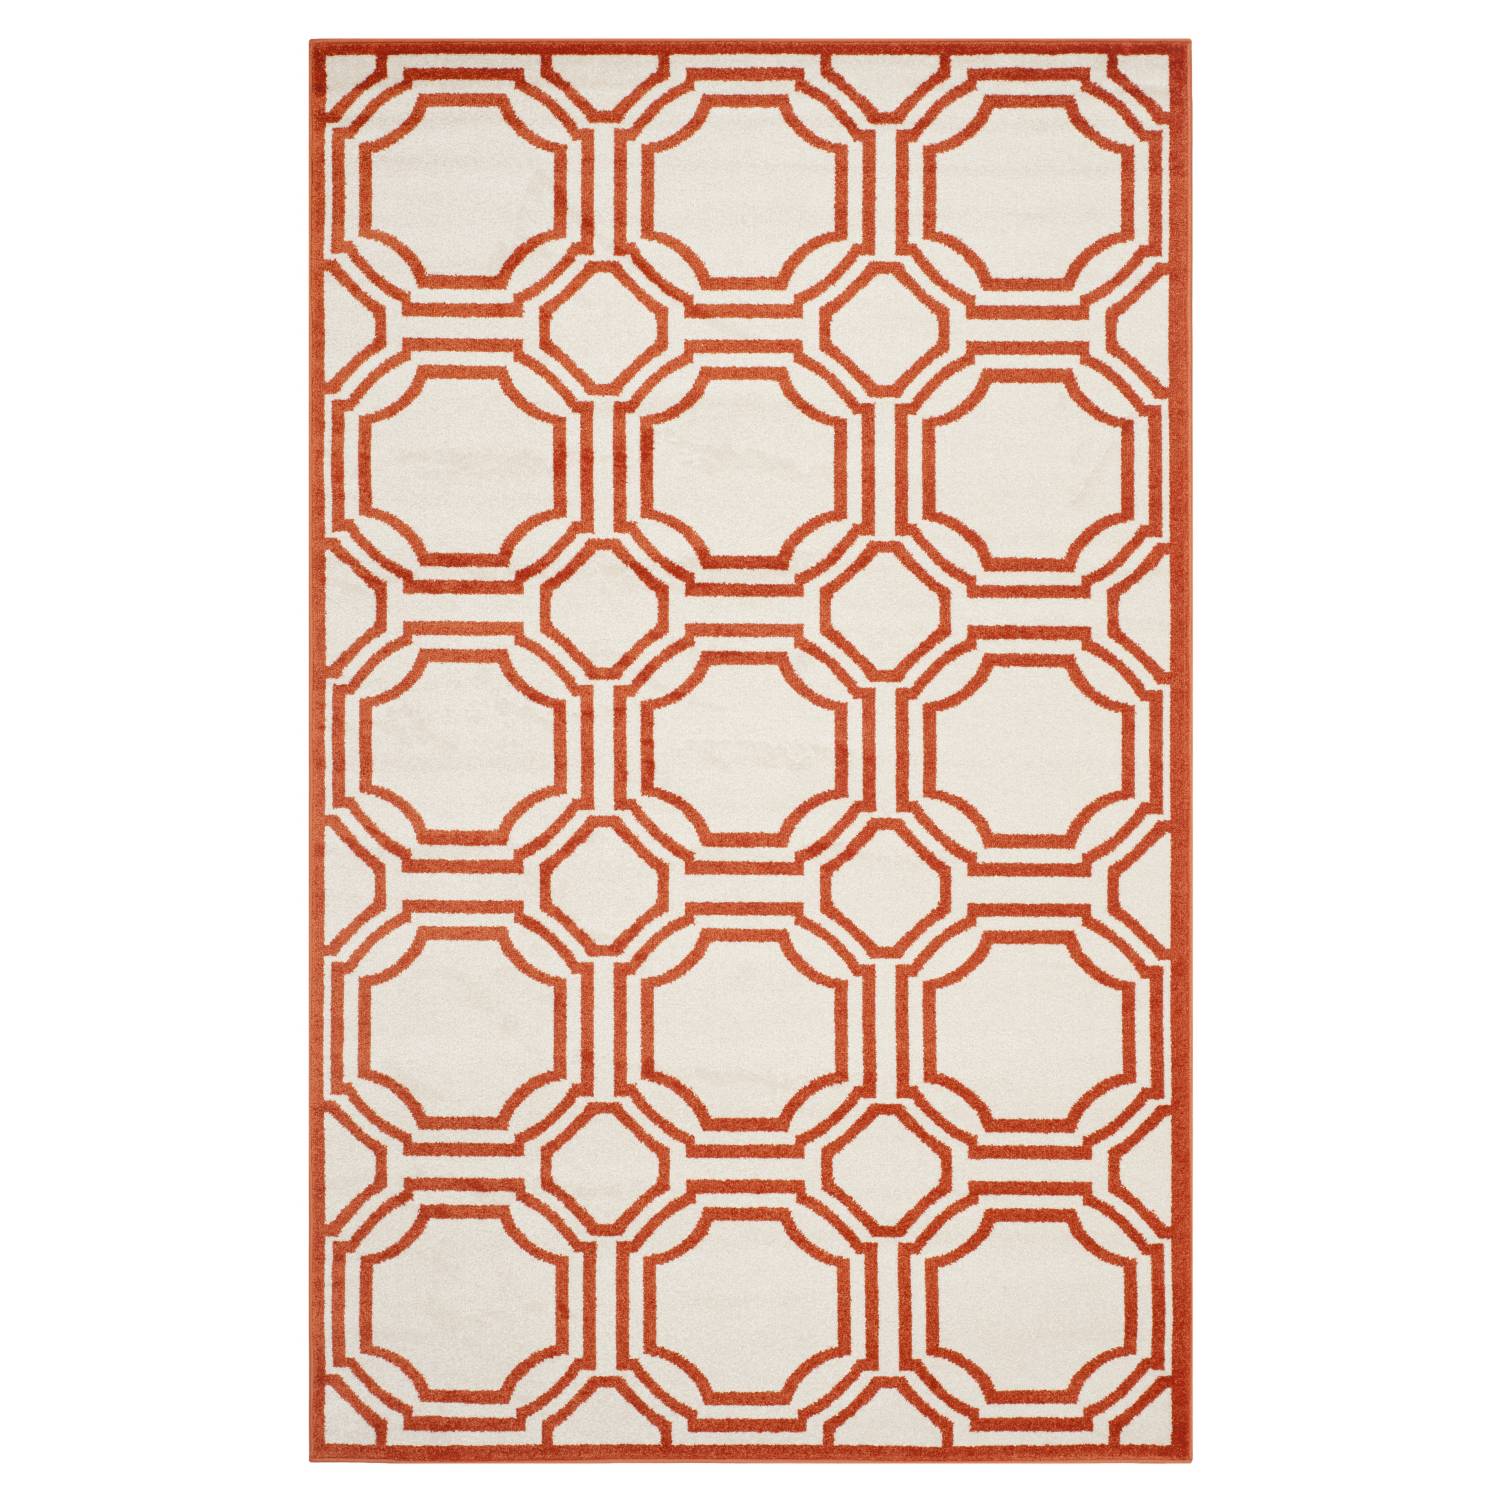 In-/Outdoorteppich Ferrat - Creme/Orange - MaÃŸe: 152 x 243 cm, Safavieh